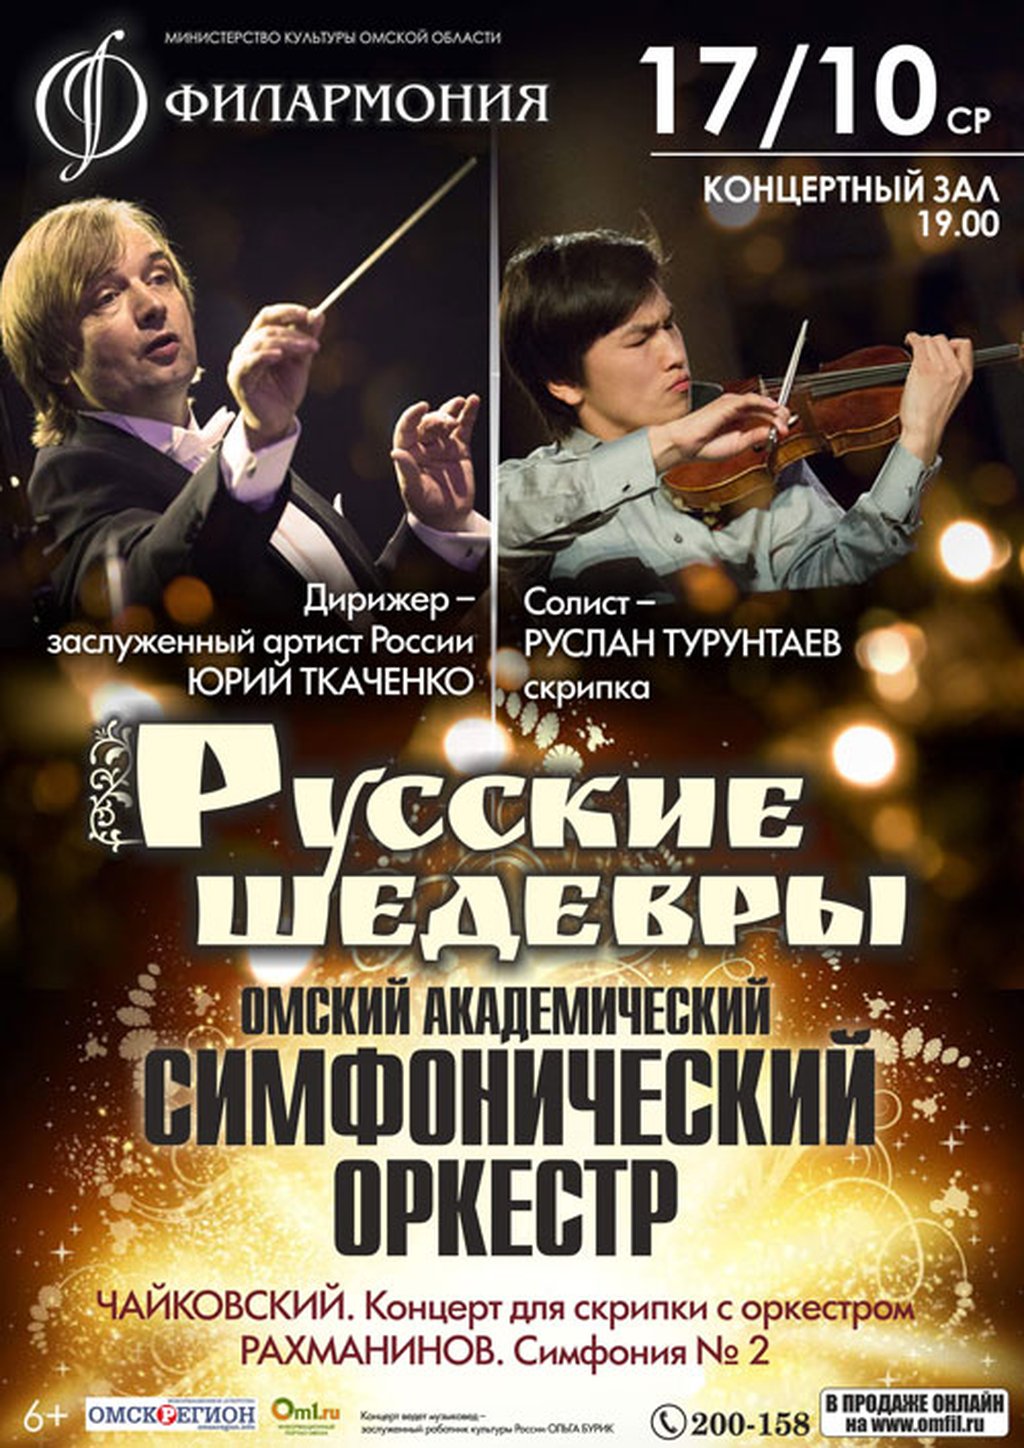 Концертный зал Омск афиша. Симфонический оркестр Омск афиша.